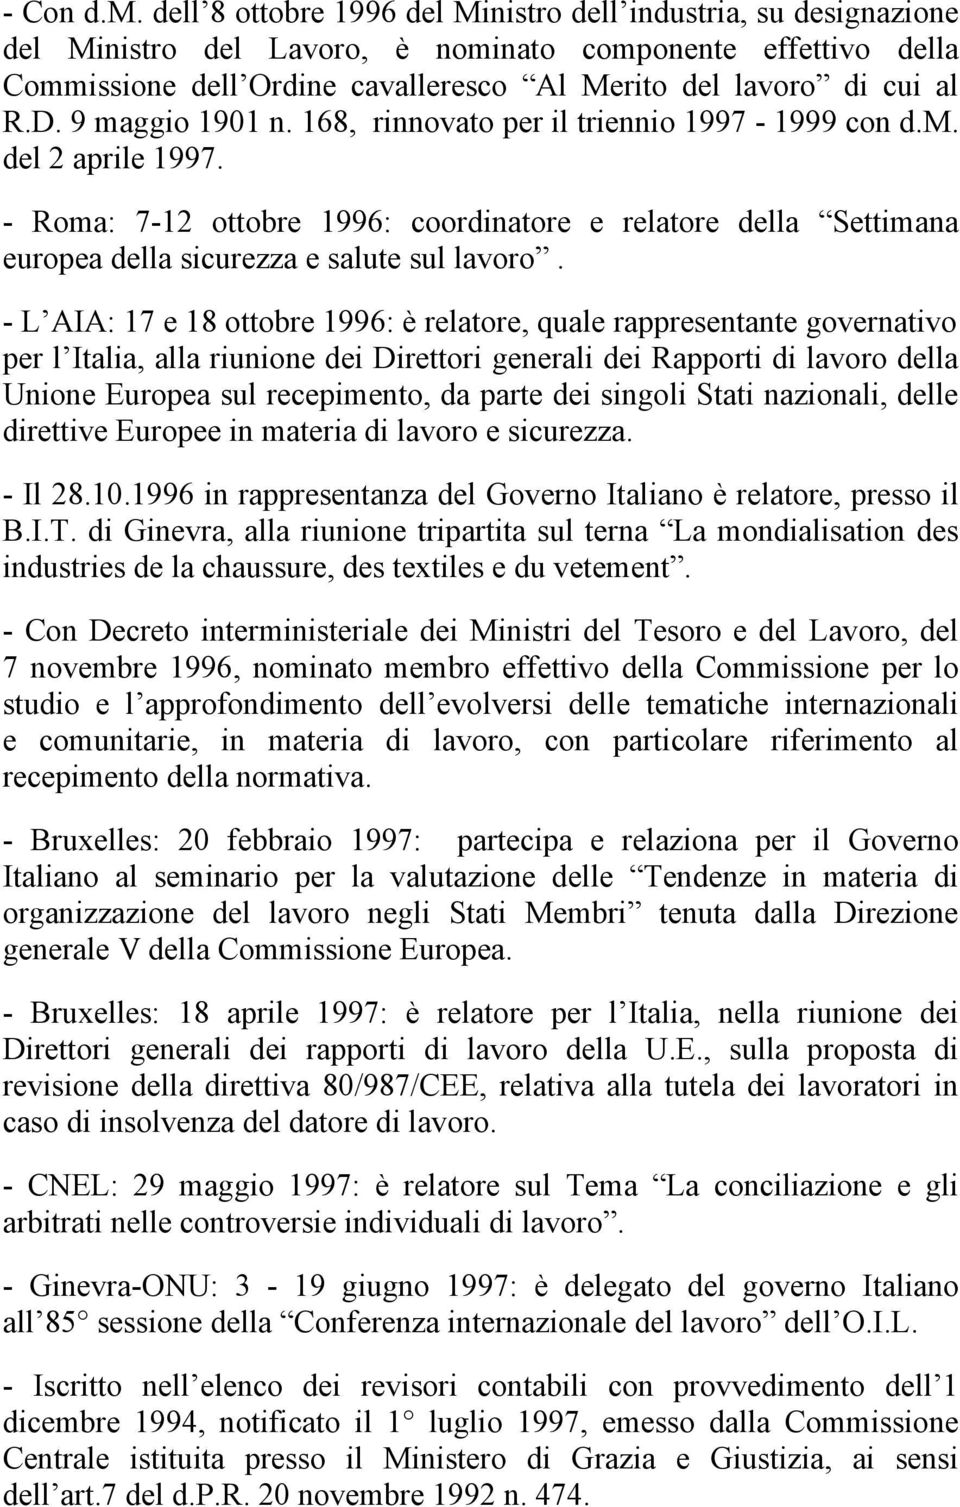 9 maggio 1901 n. 168, rinnovato per il triennio 1997-1999 con d.m. del 2 aprile 1997. - Roma: 7-12 ottobre 1996: coordinatore e relatore della Settimana europea della sicurezza e salute sul lavoro.